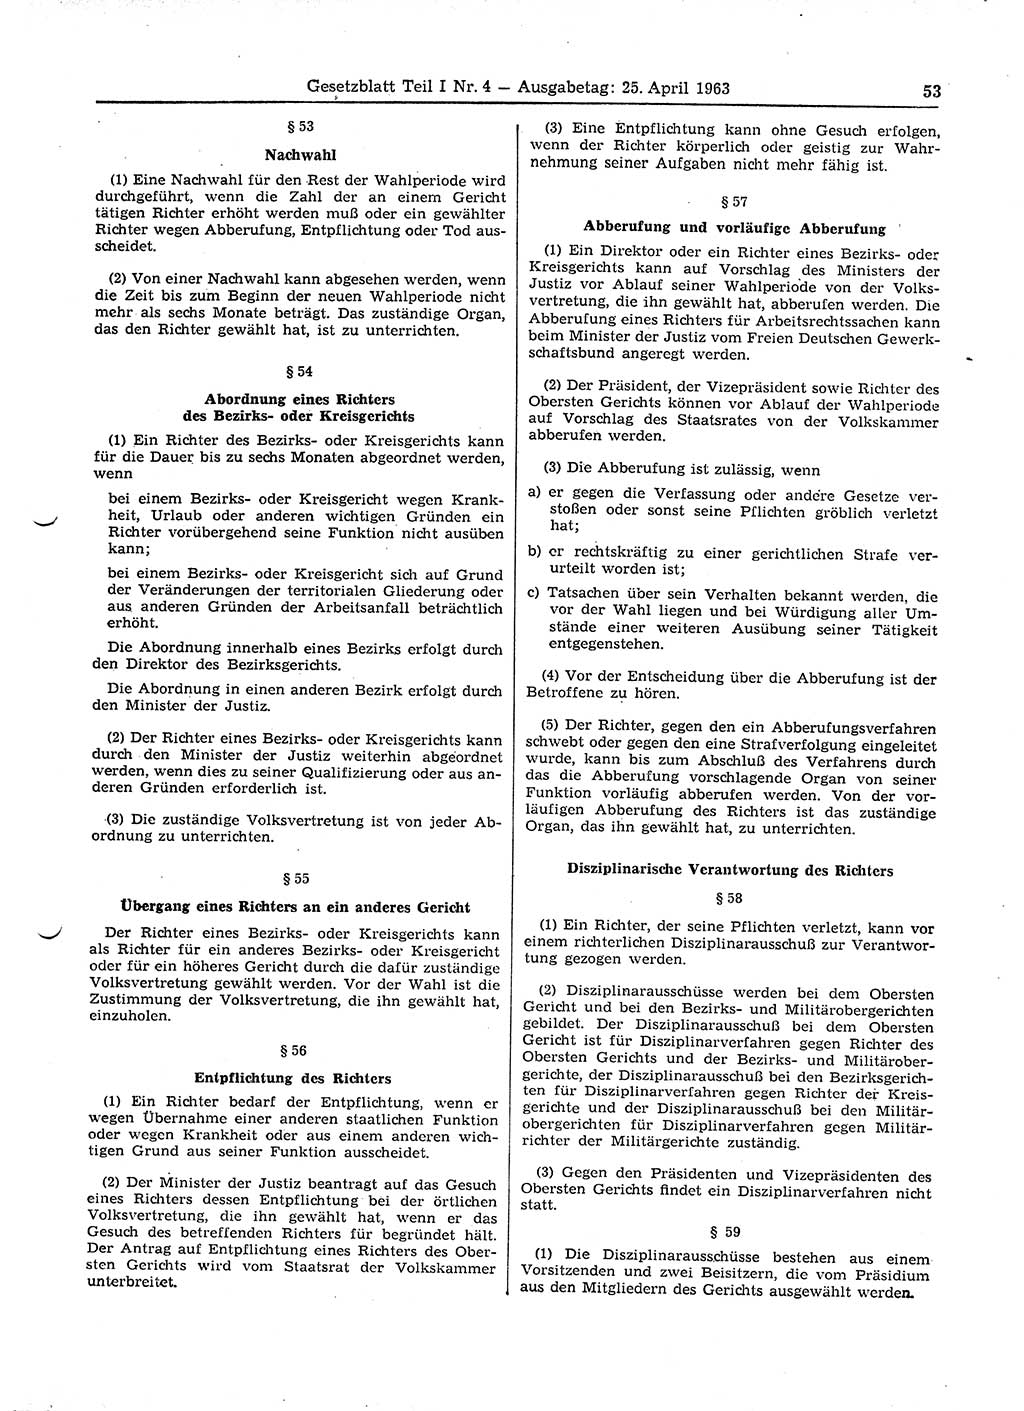 Gesetzblatt (GBl.) der Deutschen Demokratischen Republik (DDR) Teil Ⅰ 1963, Seite 53 (GBl. DDR Ⅰ 1963, S. 53)